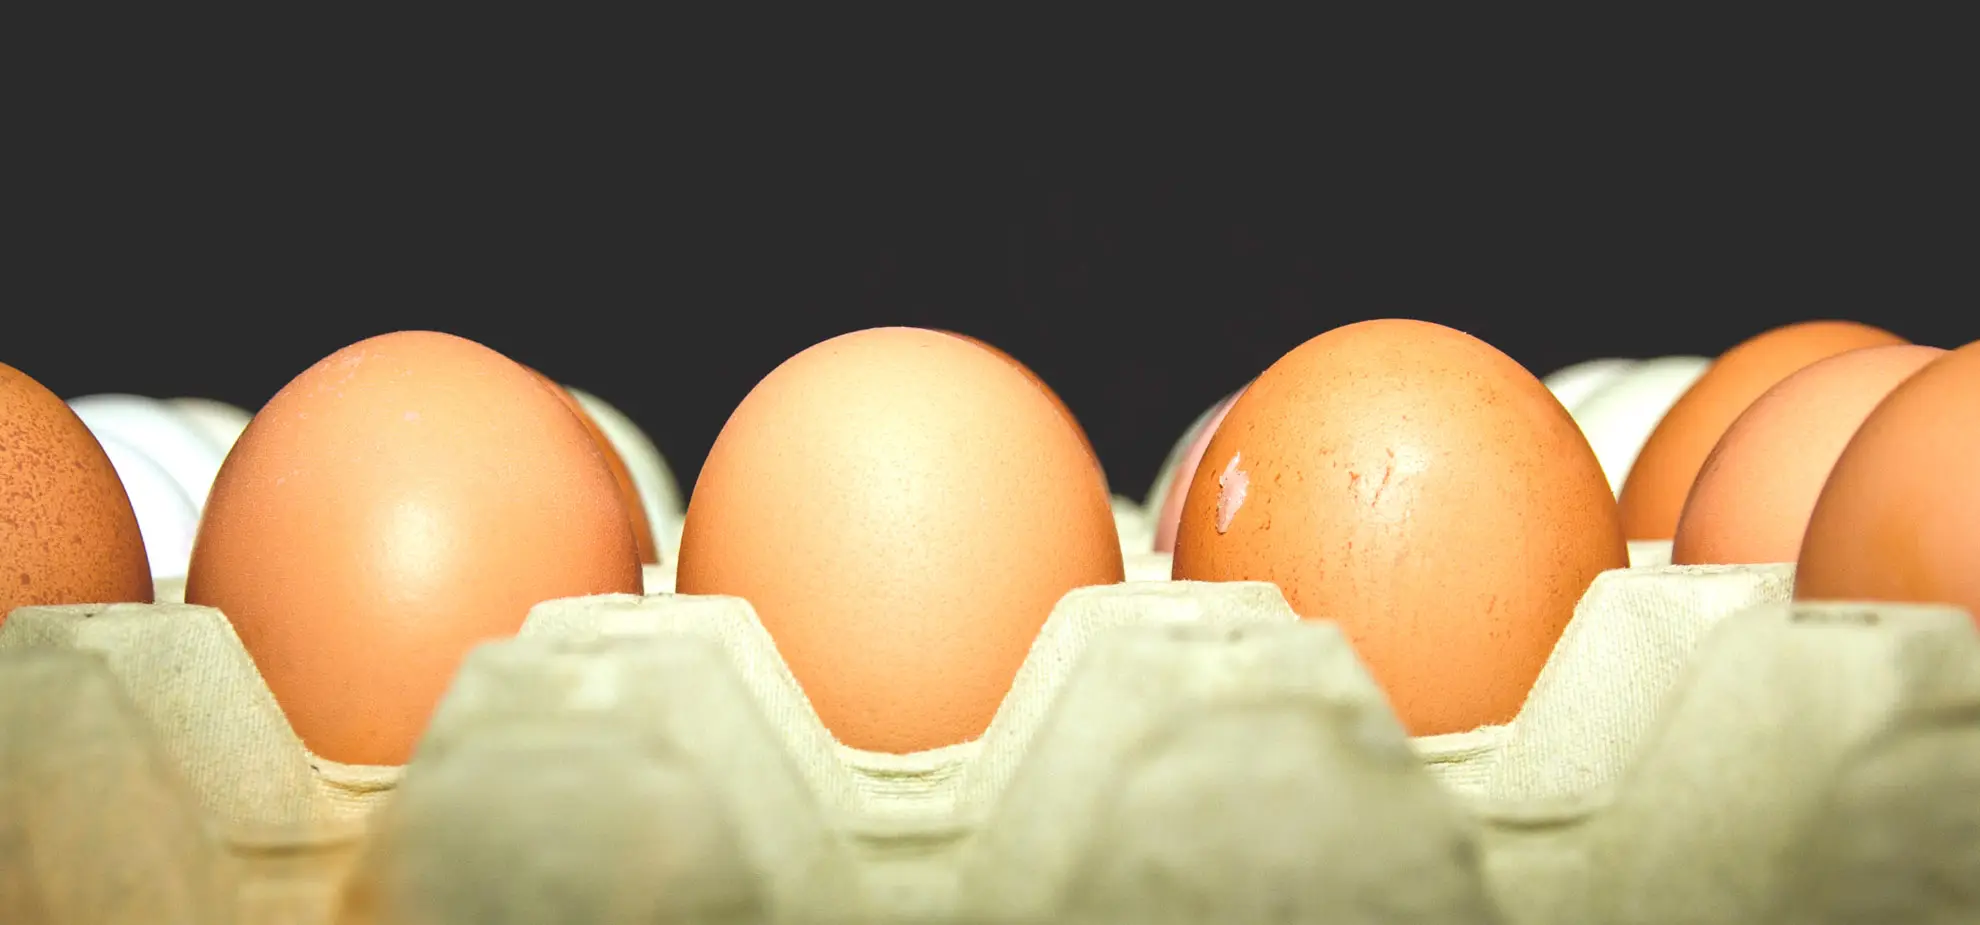 Guida al codice delle uova